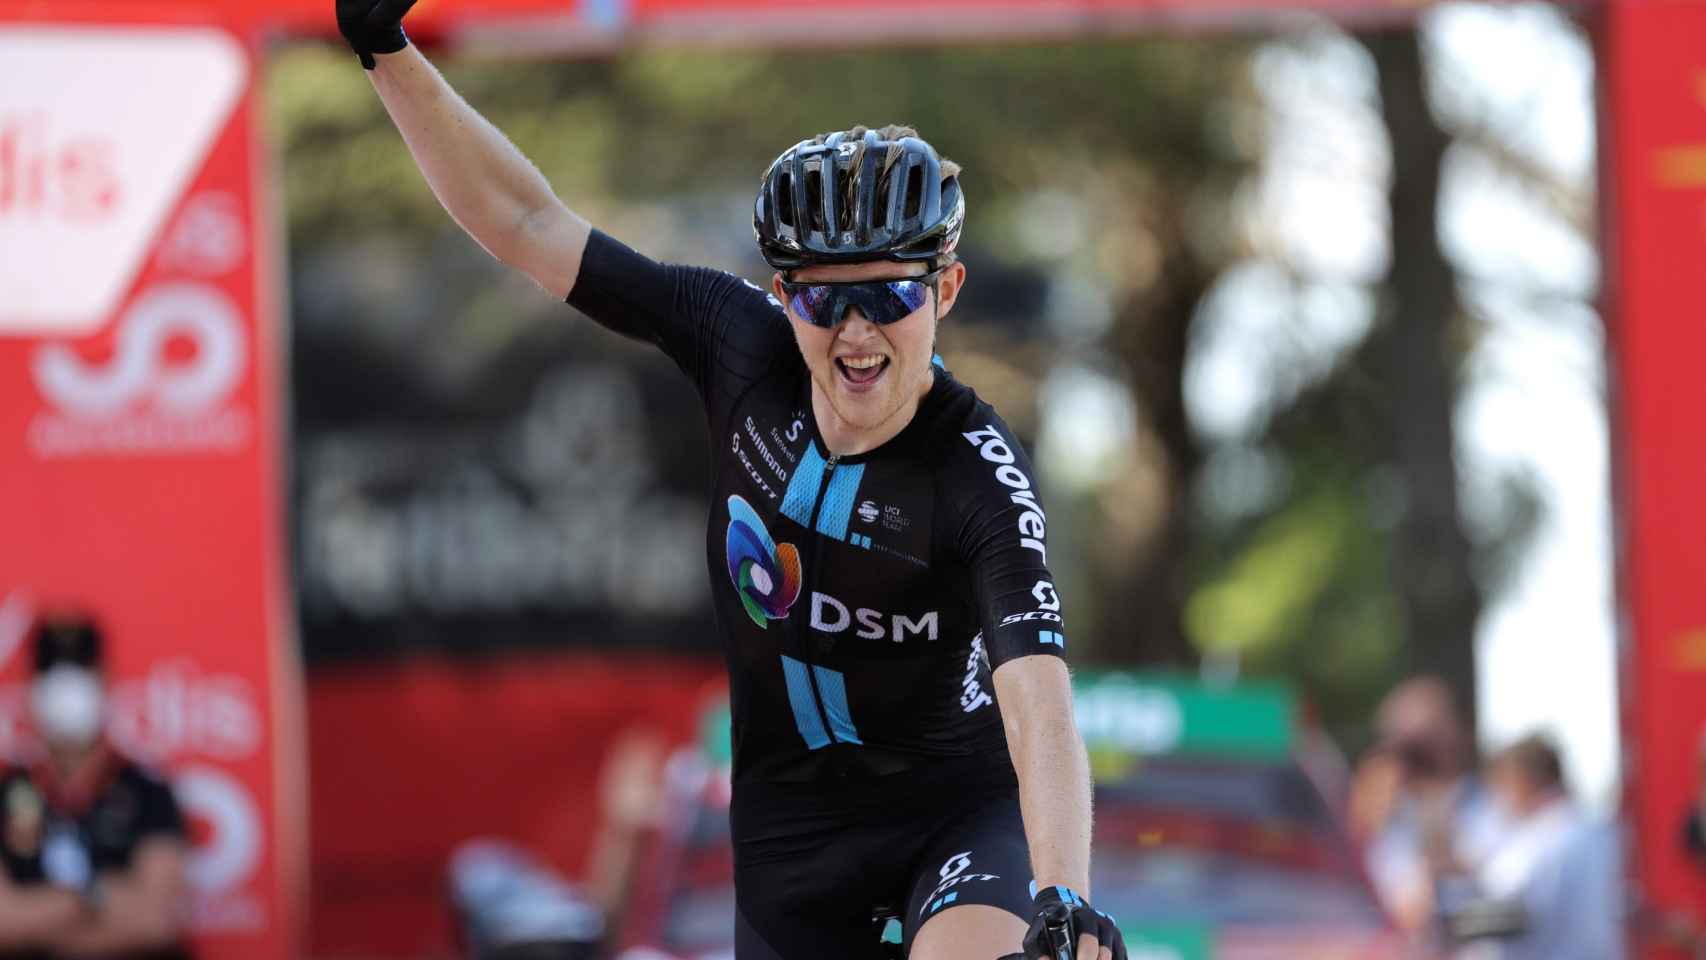 Storer vence en la 7ª etapa de La Vuelta 2021